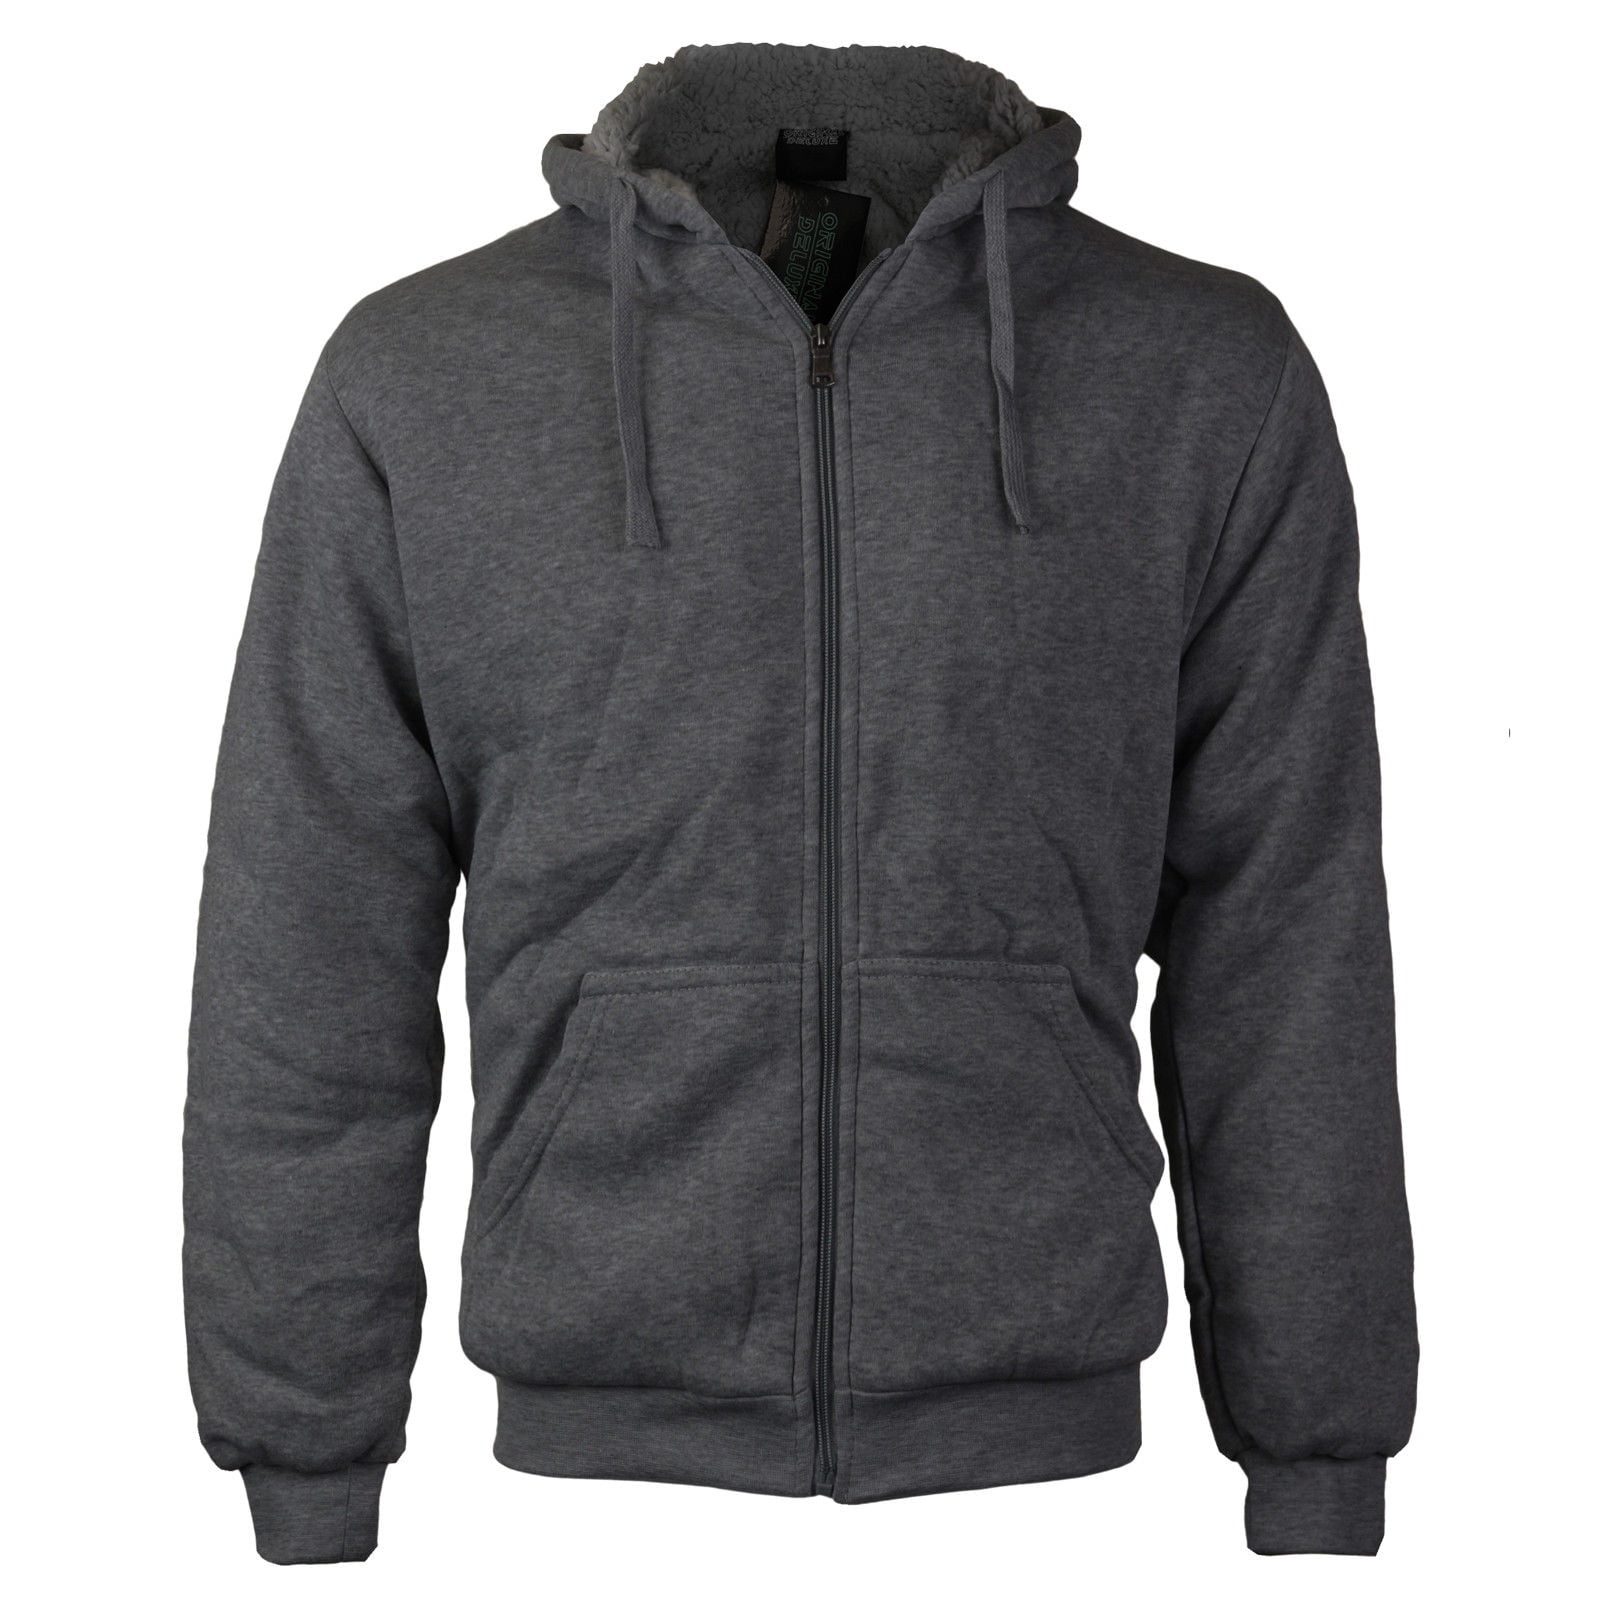 Men's Premium Athletic Soft Sherpa Lined Fleece Zip Up Hoodie Sweater ...